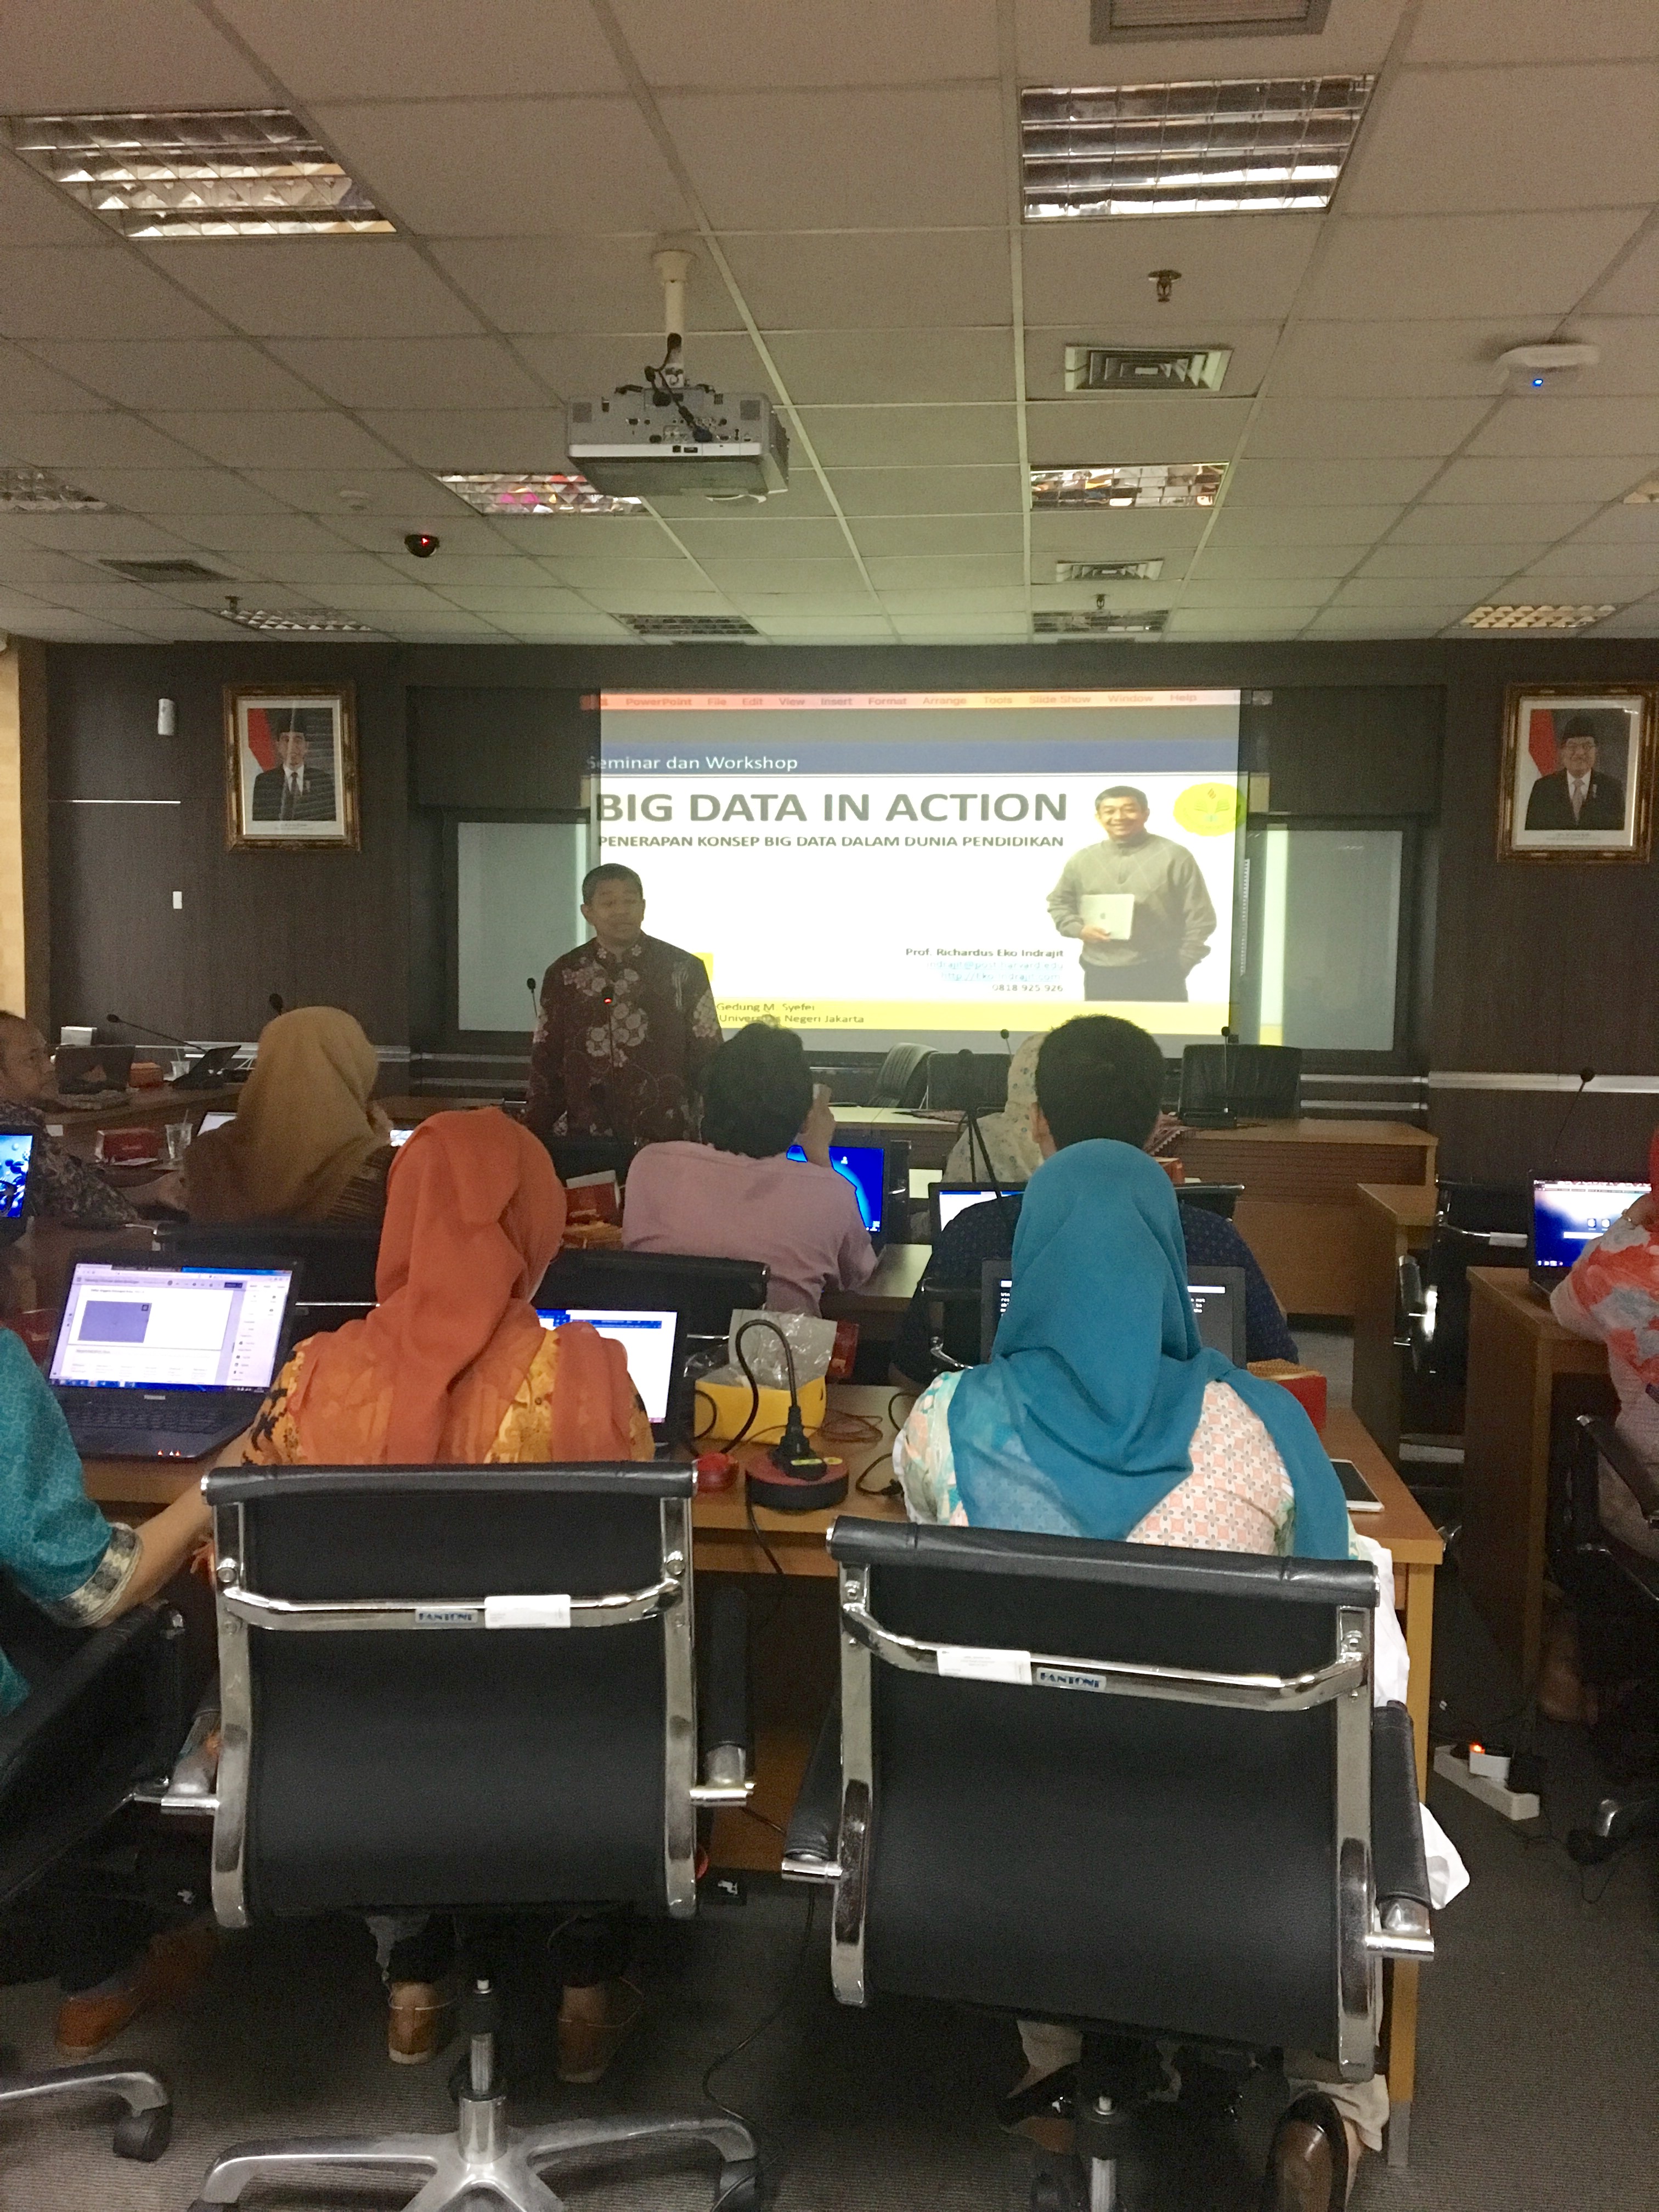 Seminar dan Workshop “Big Data in Action”